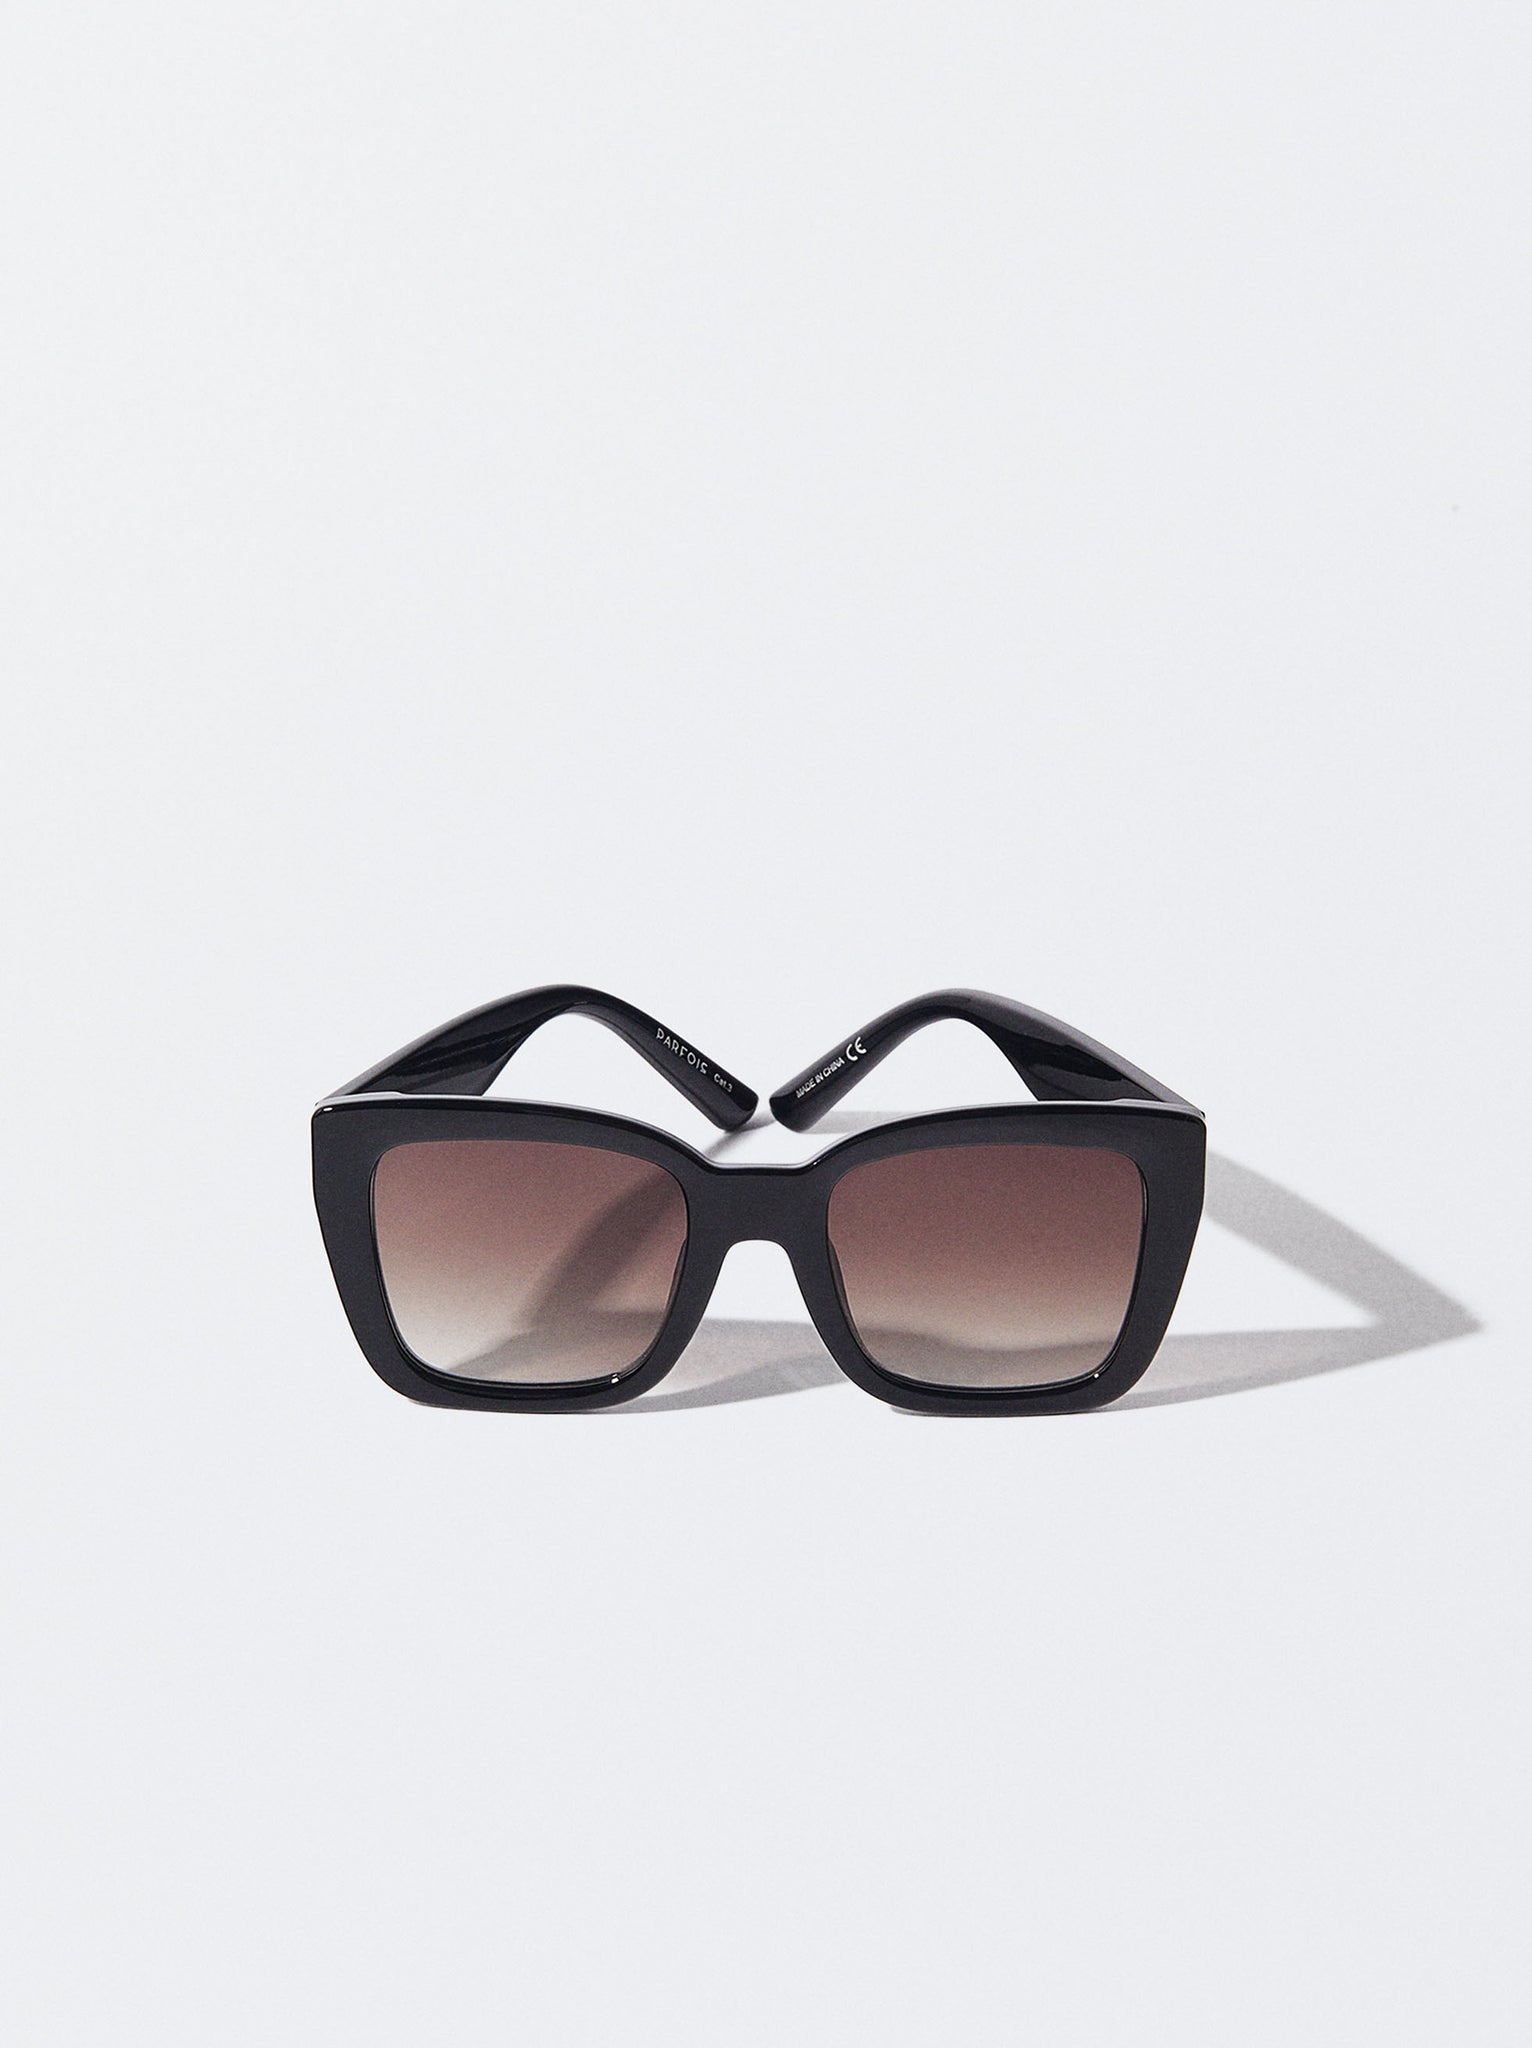 Square Sunglasses